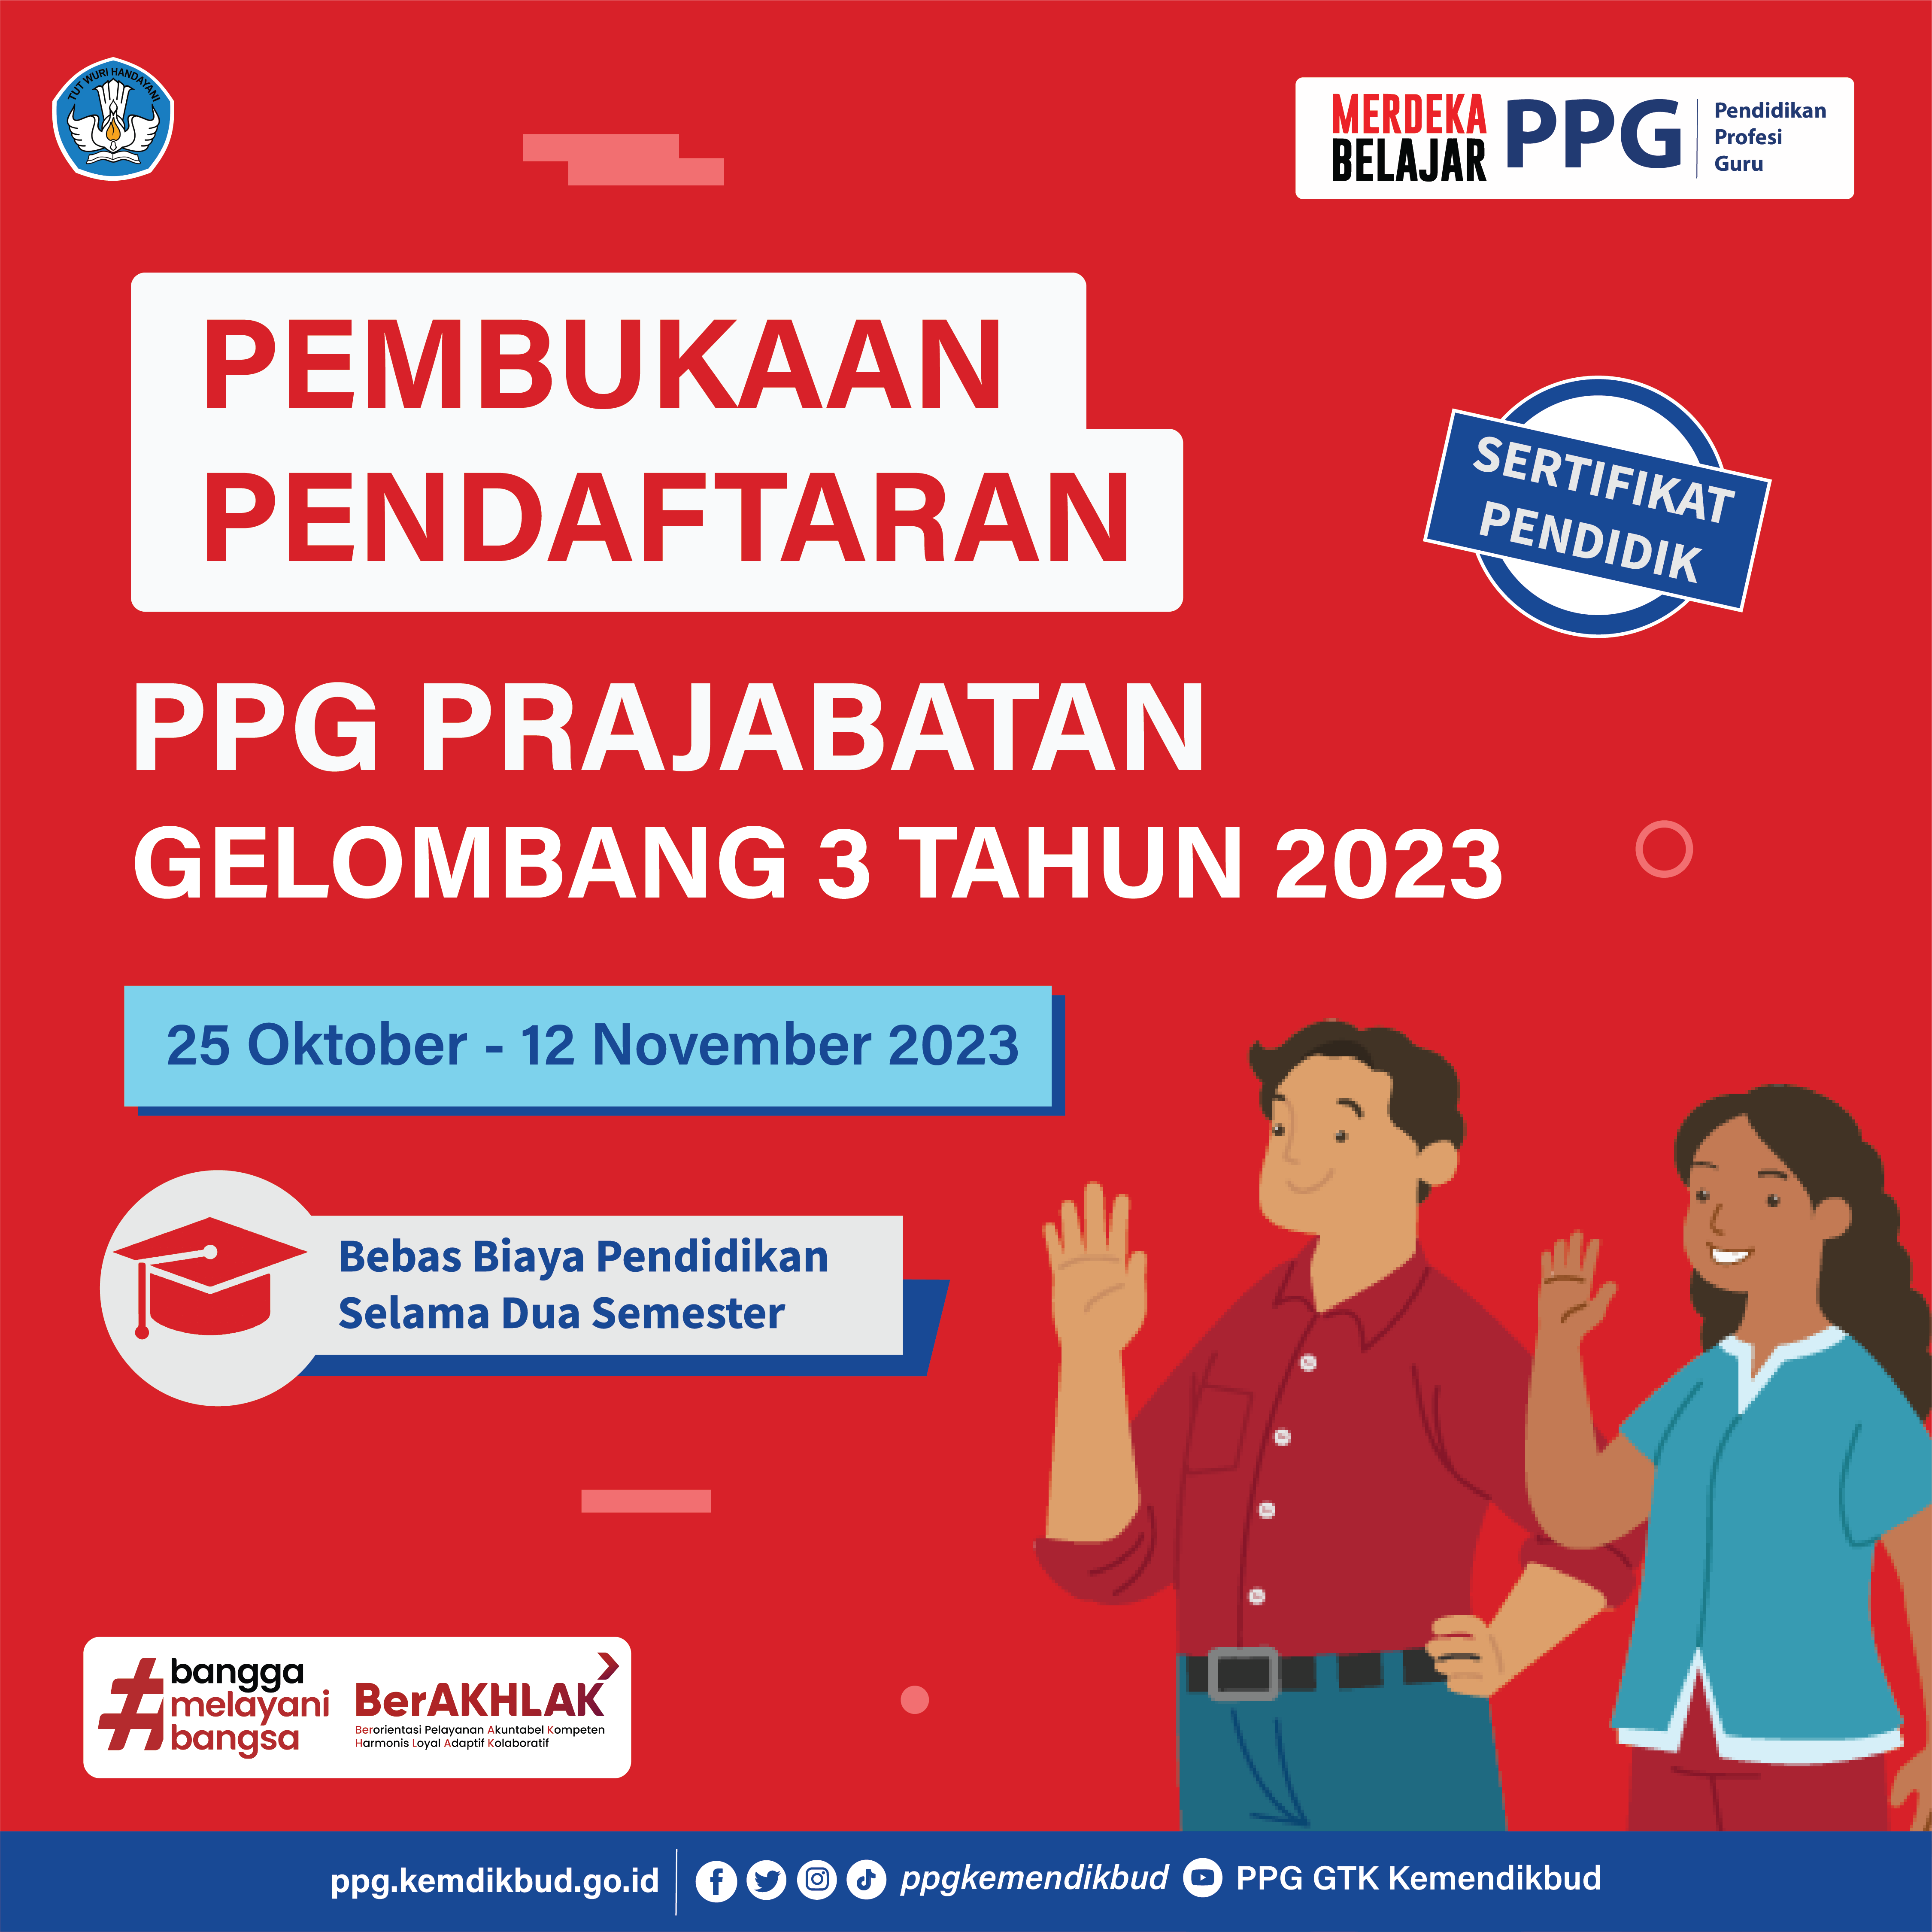 Pembukaan Pendaftaran PPG Prajabatan Gelombang 3 Tahun 2023 ...